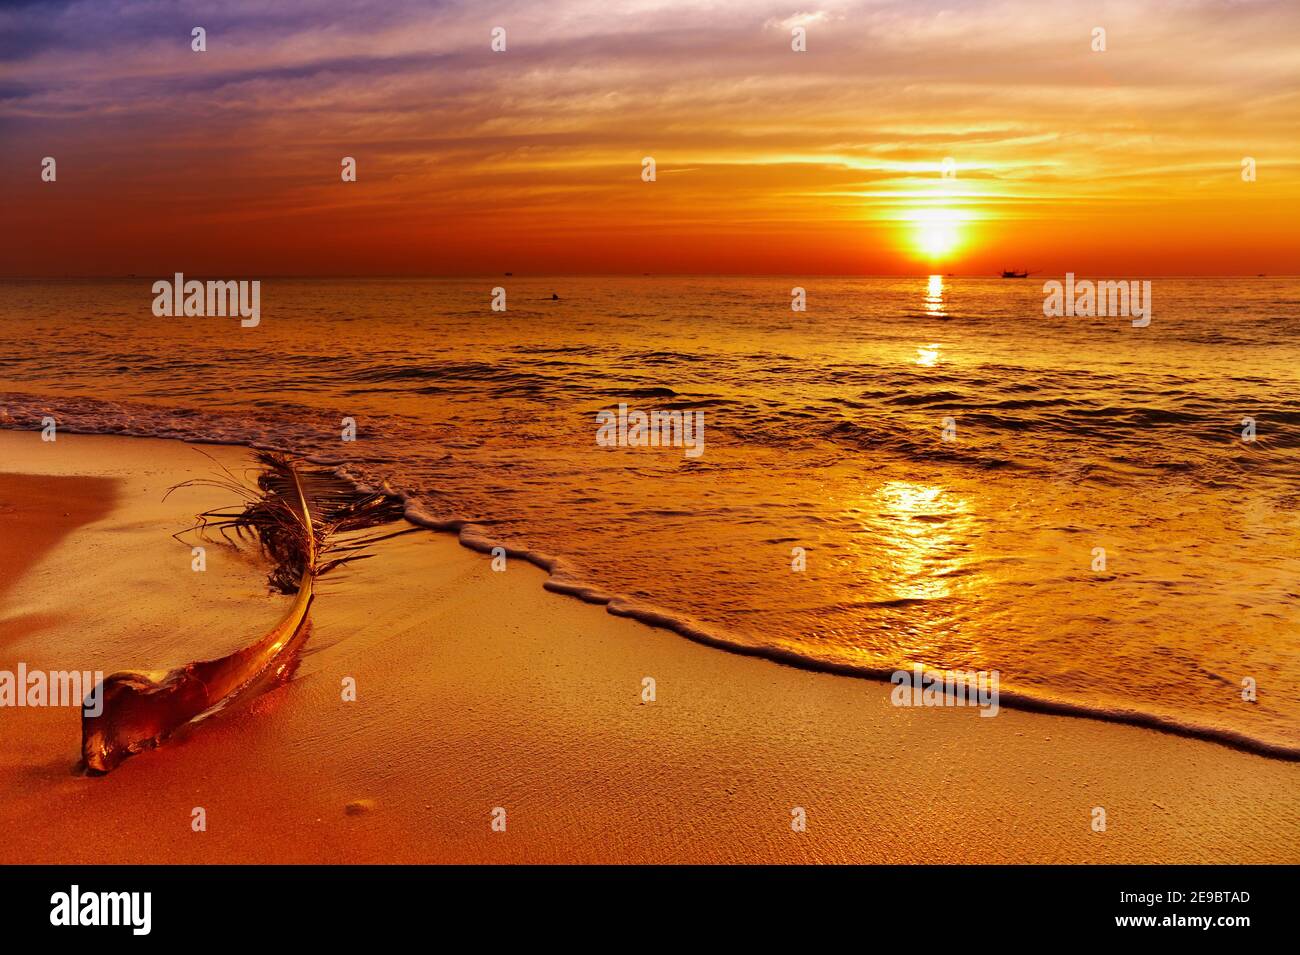 Coucher de soleil doré, plage tropicale, île de Chang, Thaïlande Banque D'Images